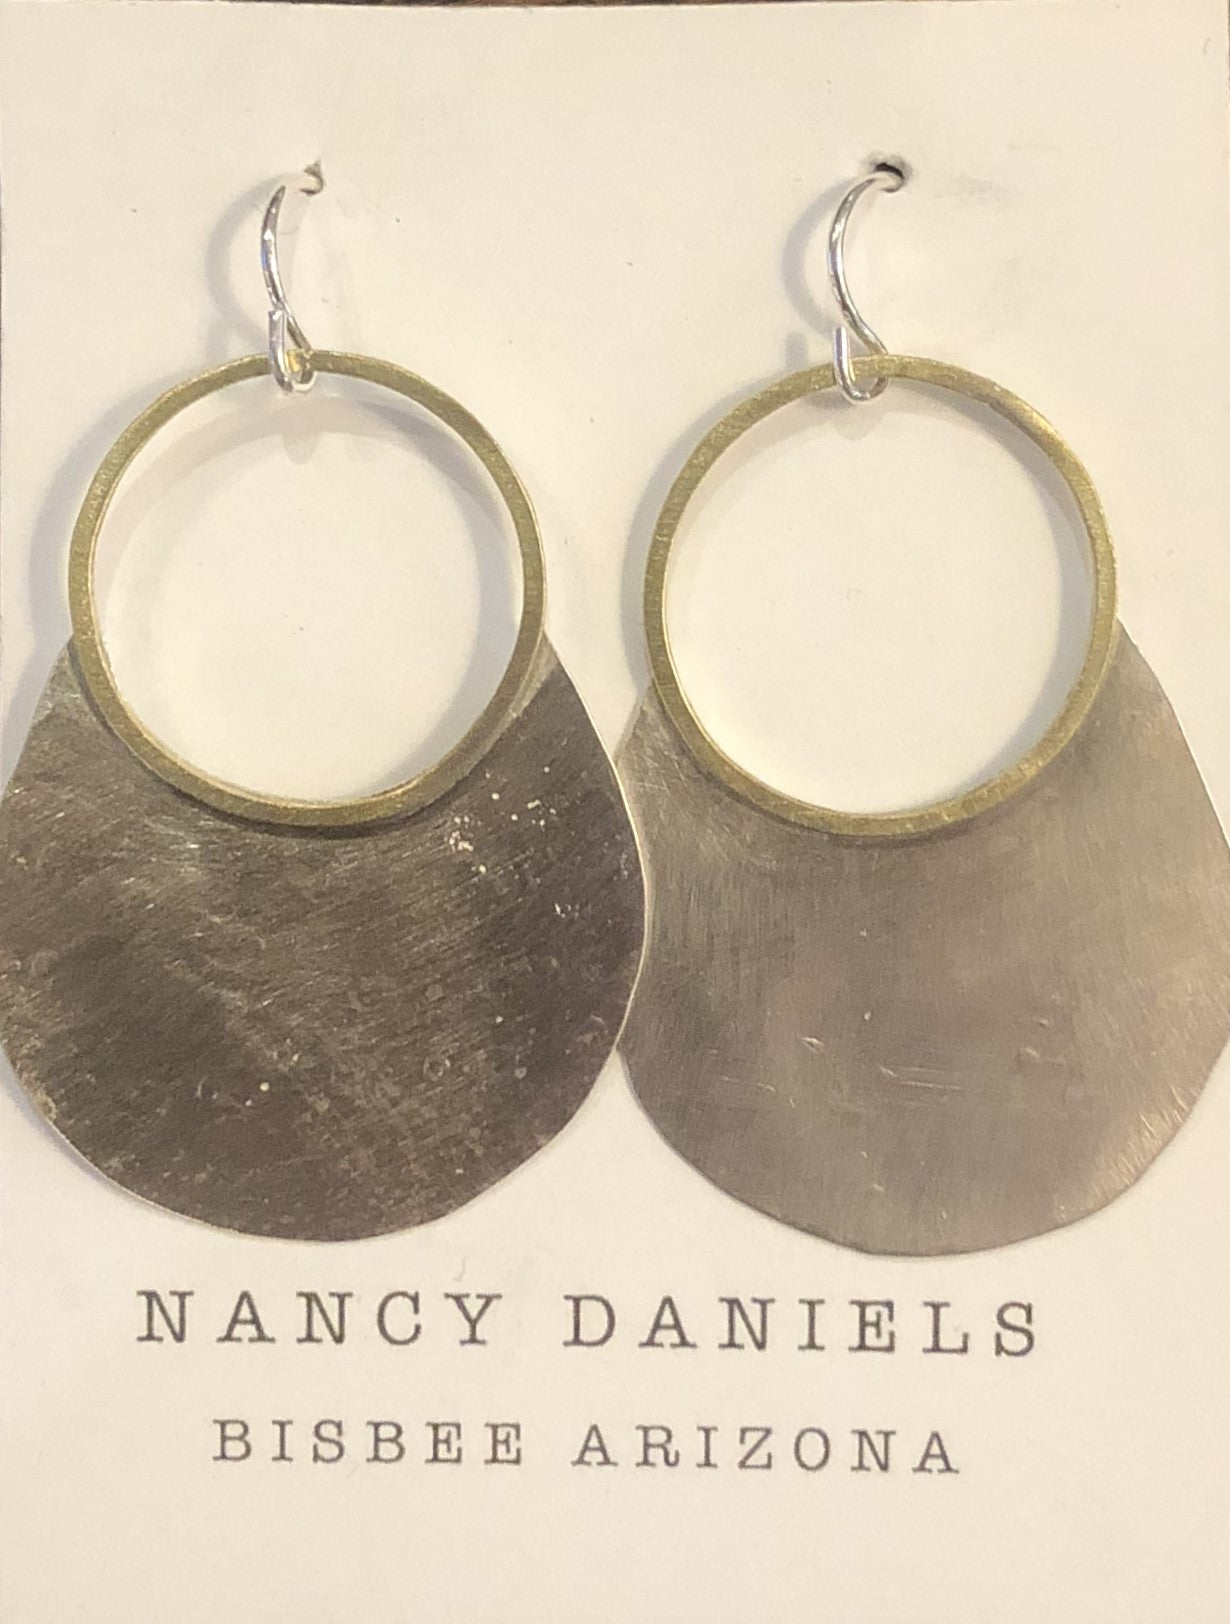 Nancy Daniels Balloon Sterling and Brass Earrings